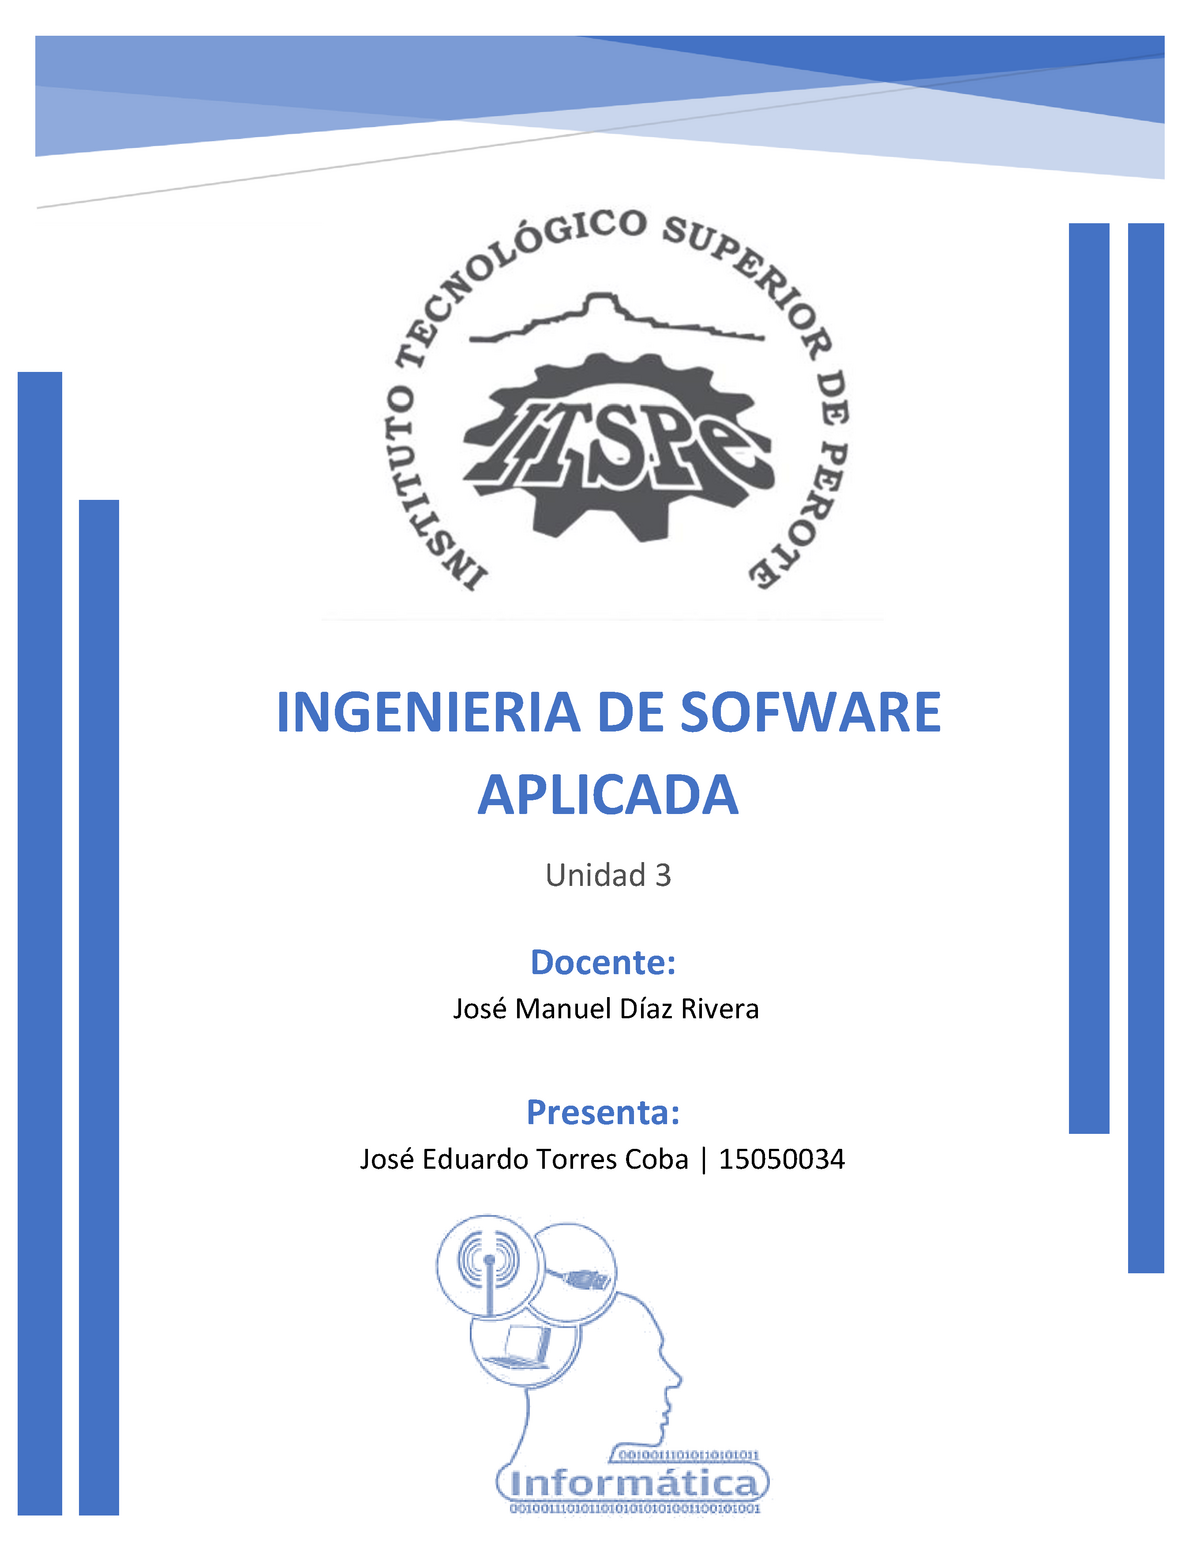 Ingeniería De Software Aplicada Warning Tt Undefined Function 32 Ingenieria De Sofware 3616